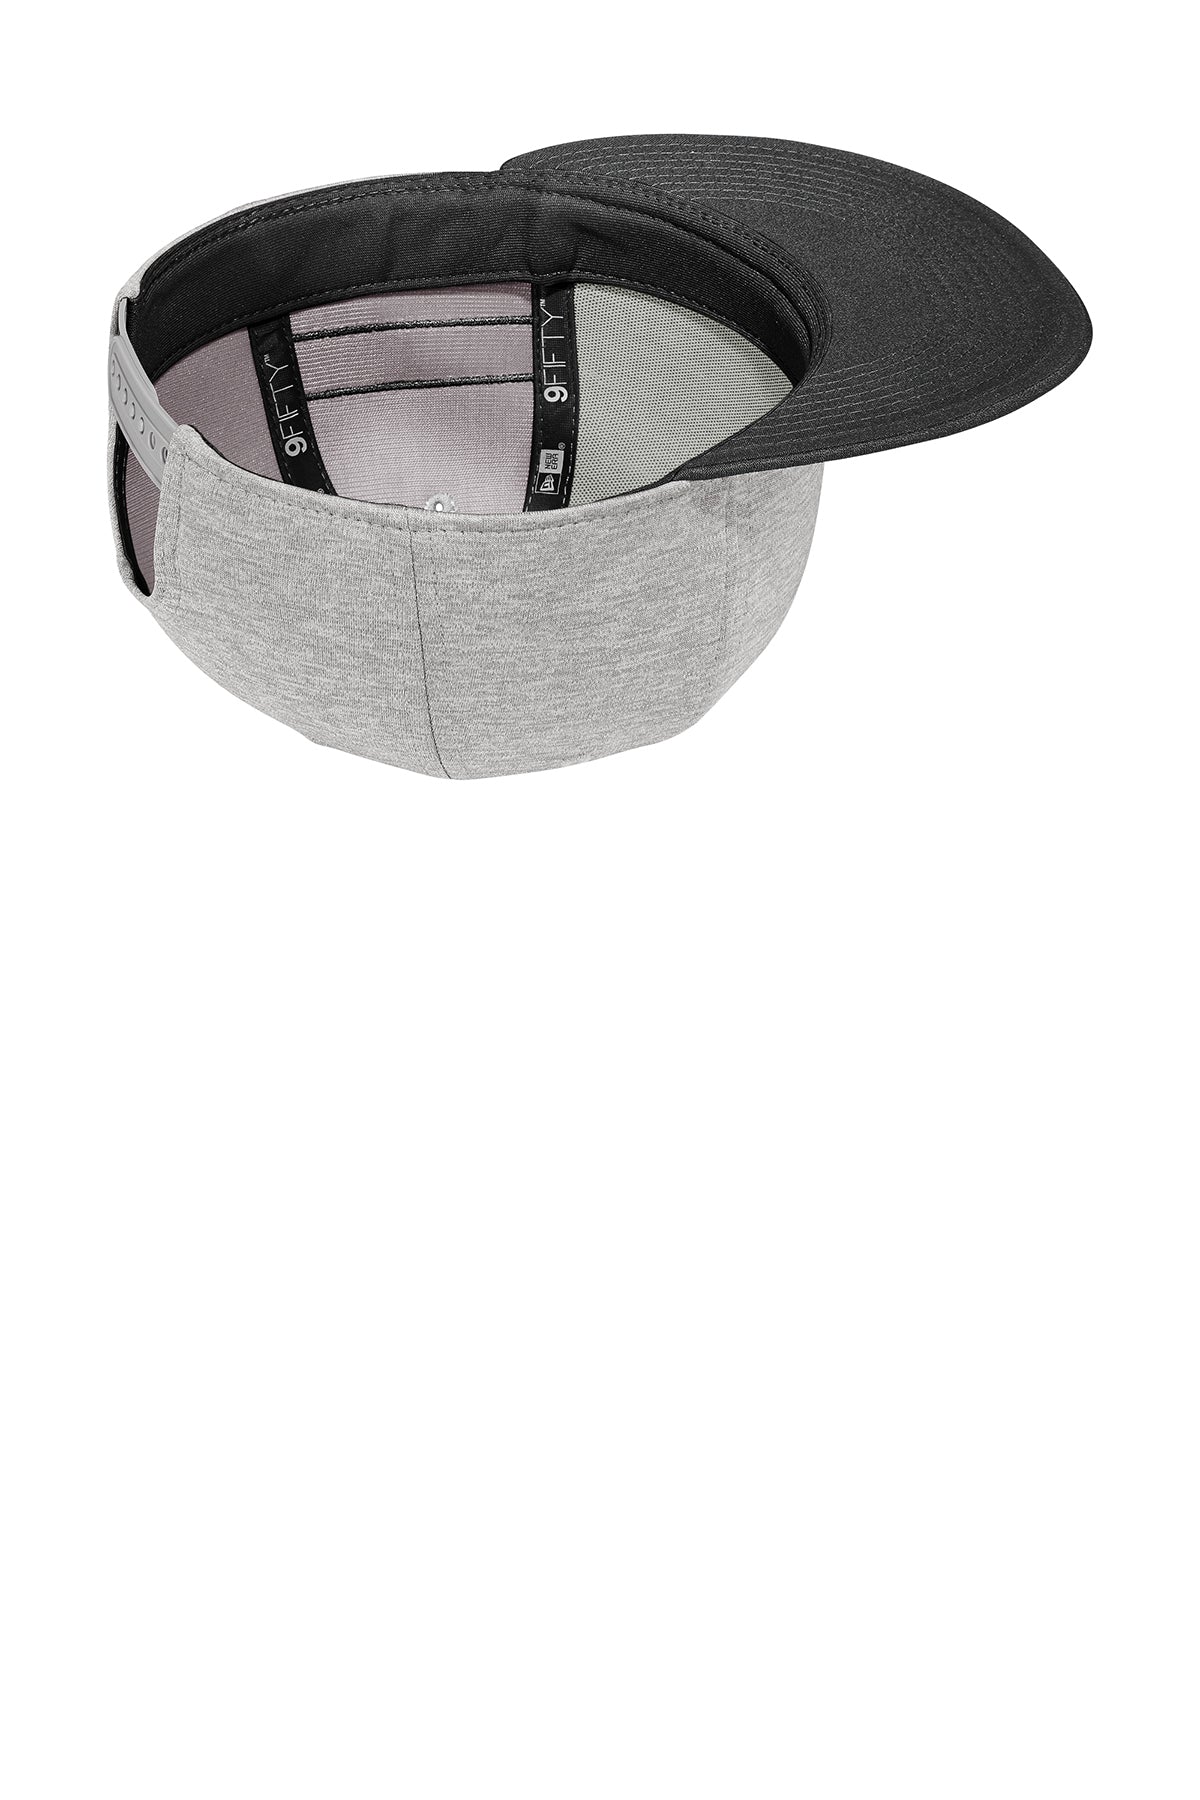 New Era Striped Flat Bill Snapback Custom Caps, Shadow Heather/ Black